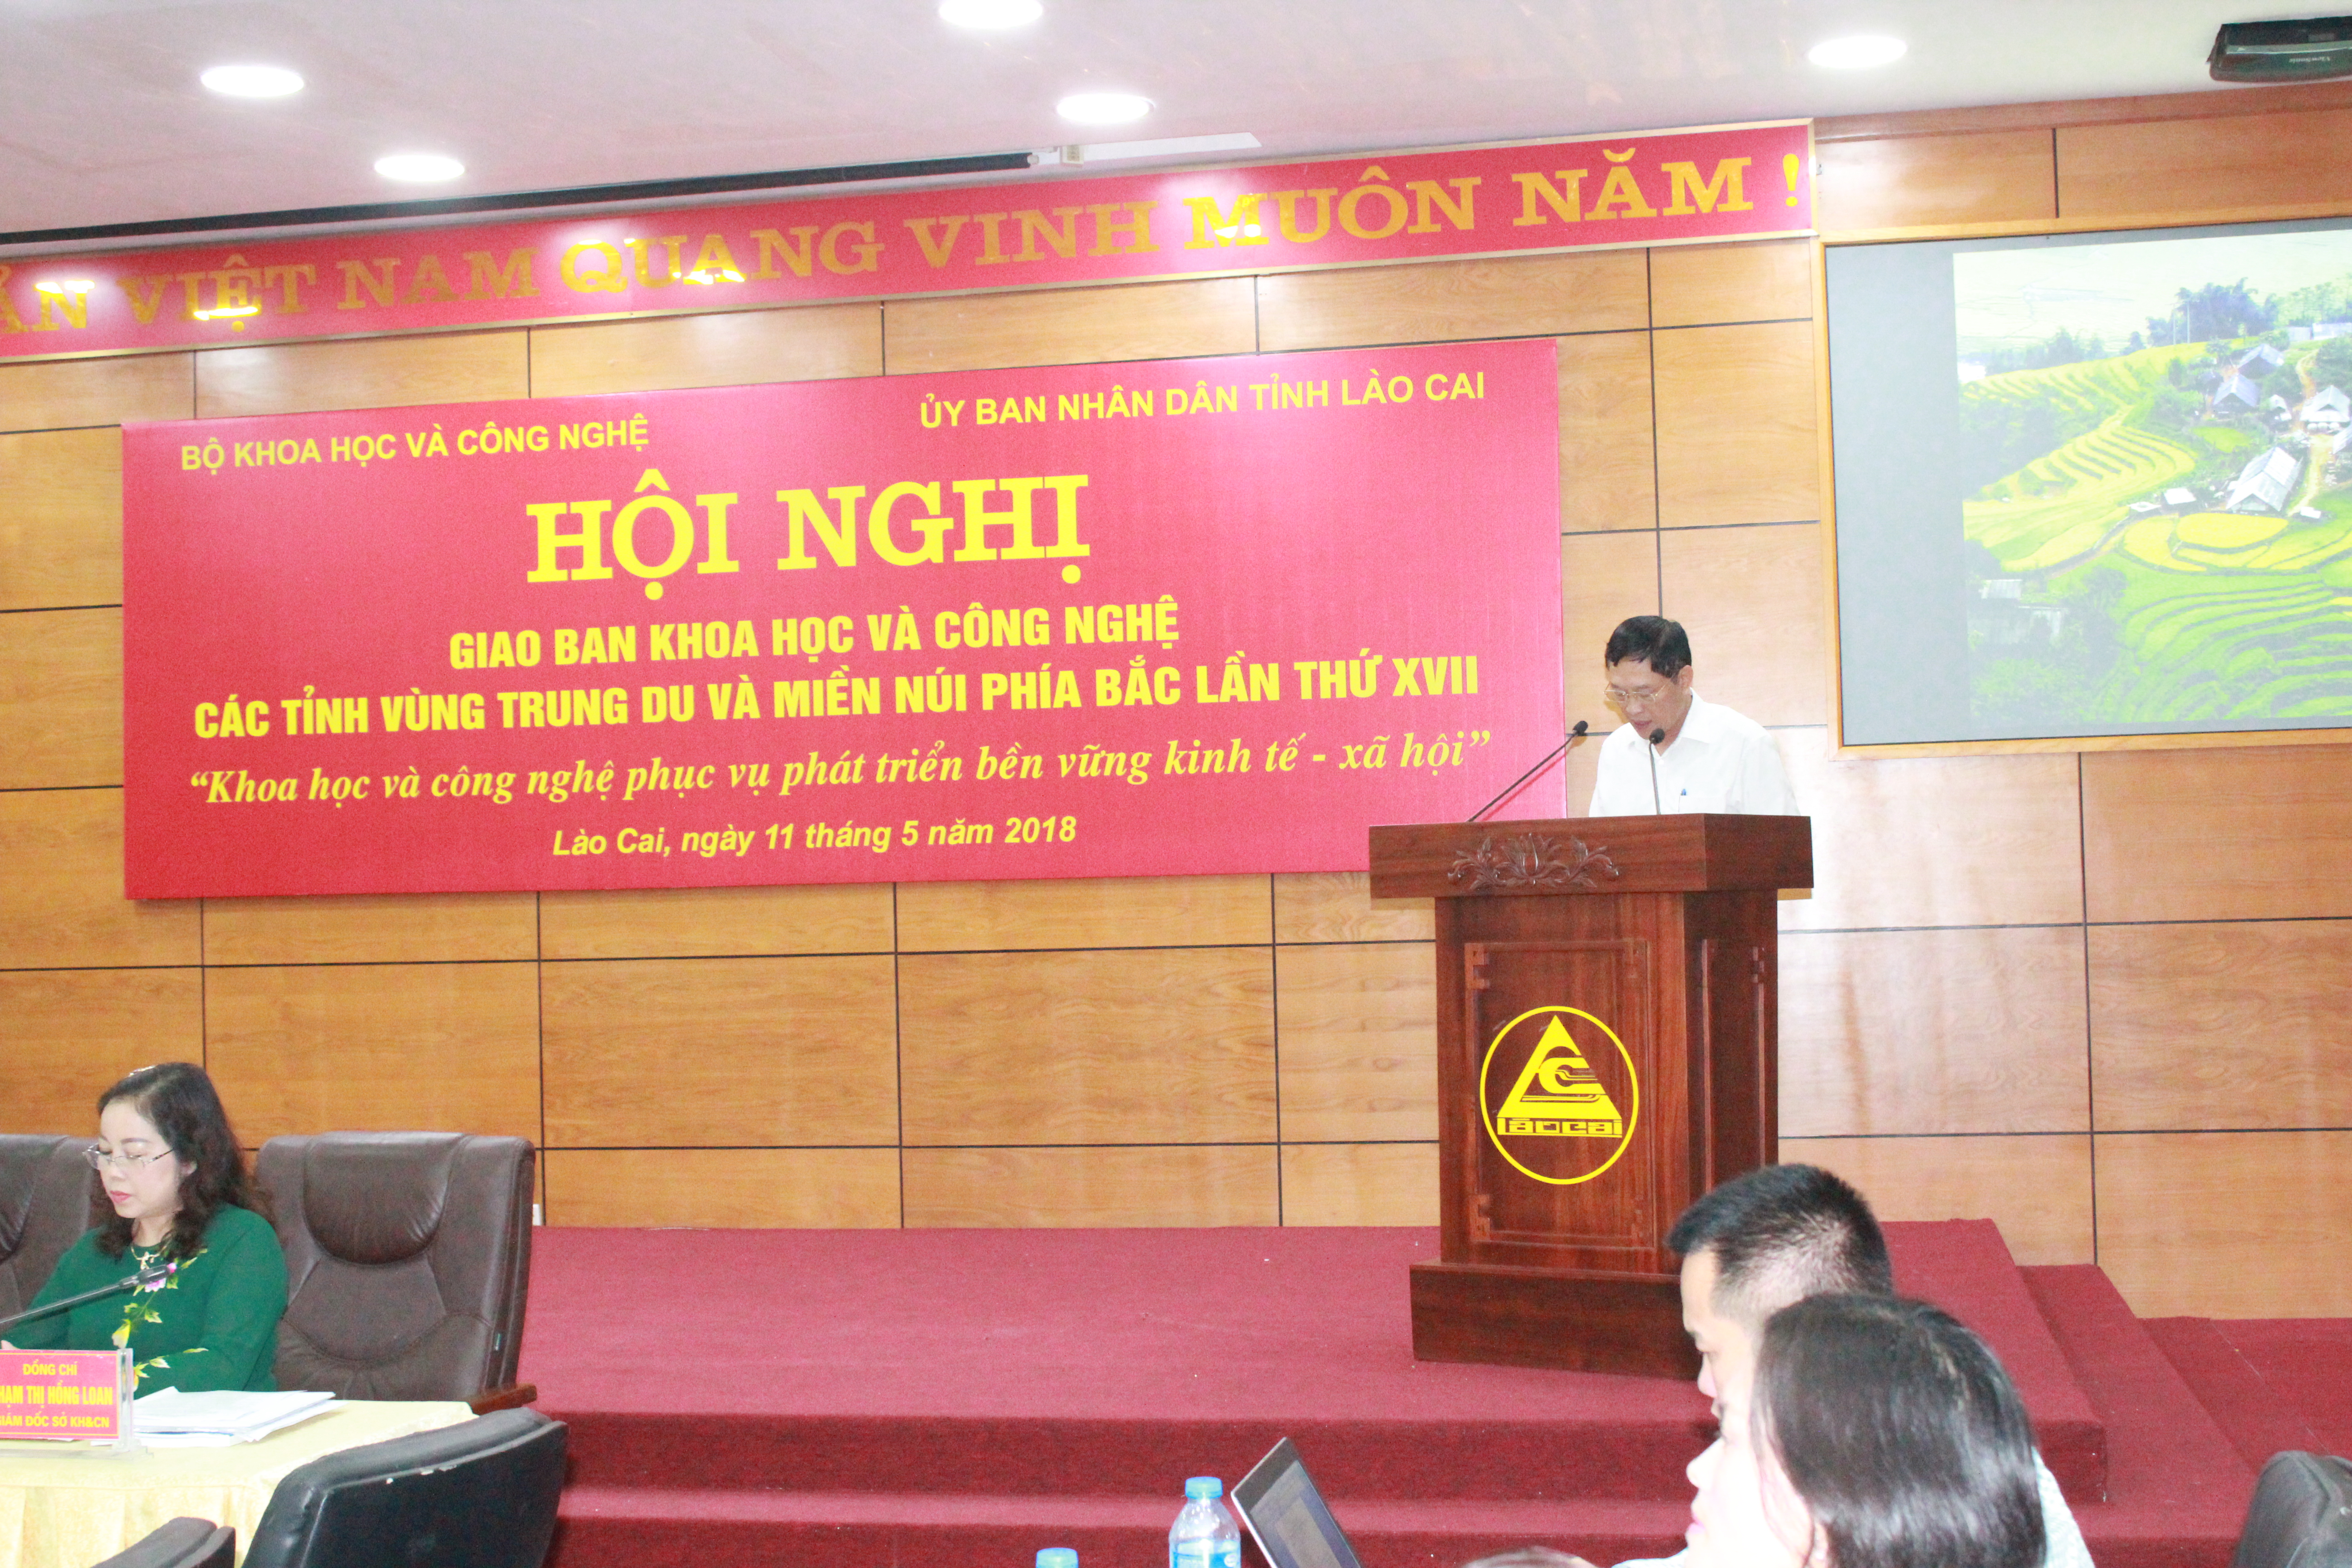 Thứ trưởng Bộ KHCN Trần Văn Tùng đọc diễn văn khai mạc lễ giao ban